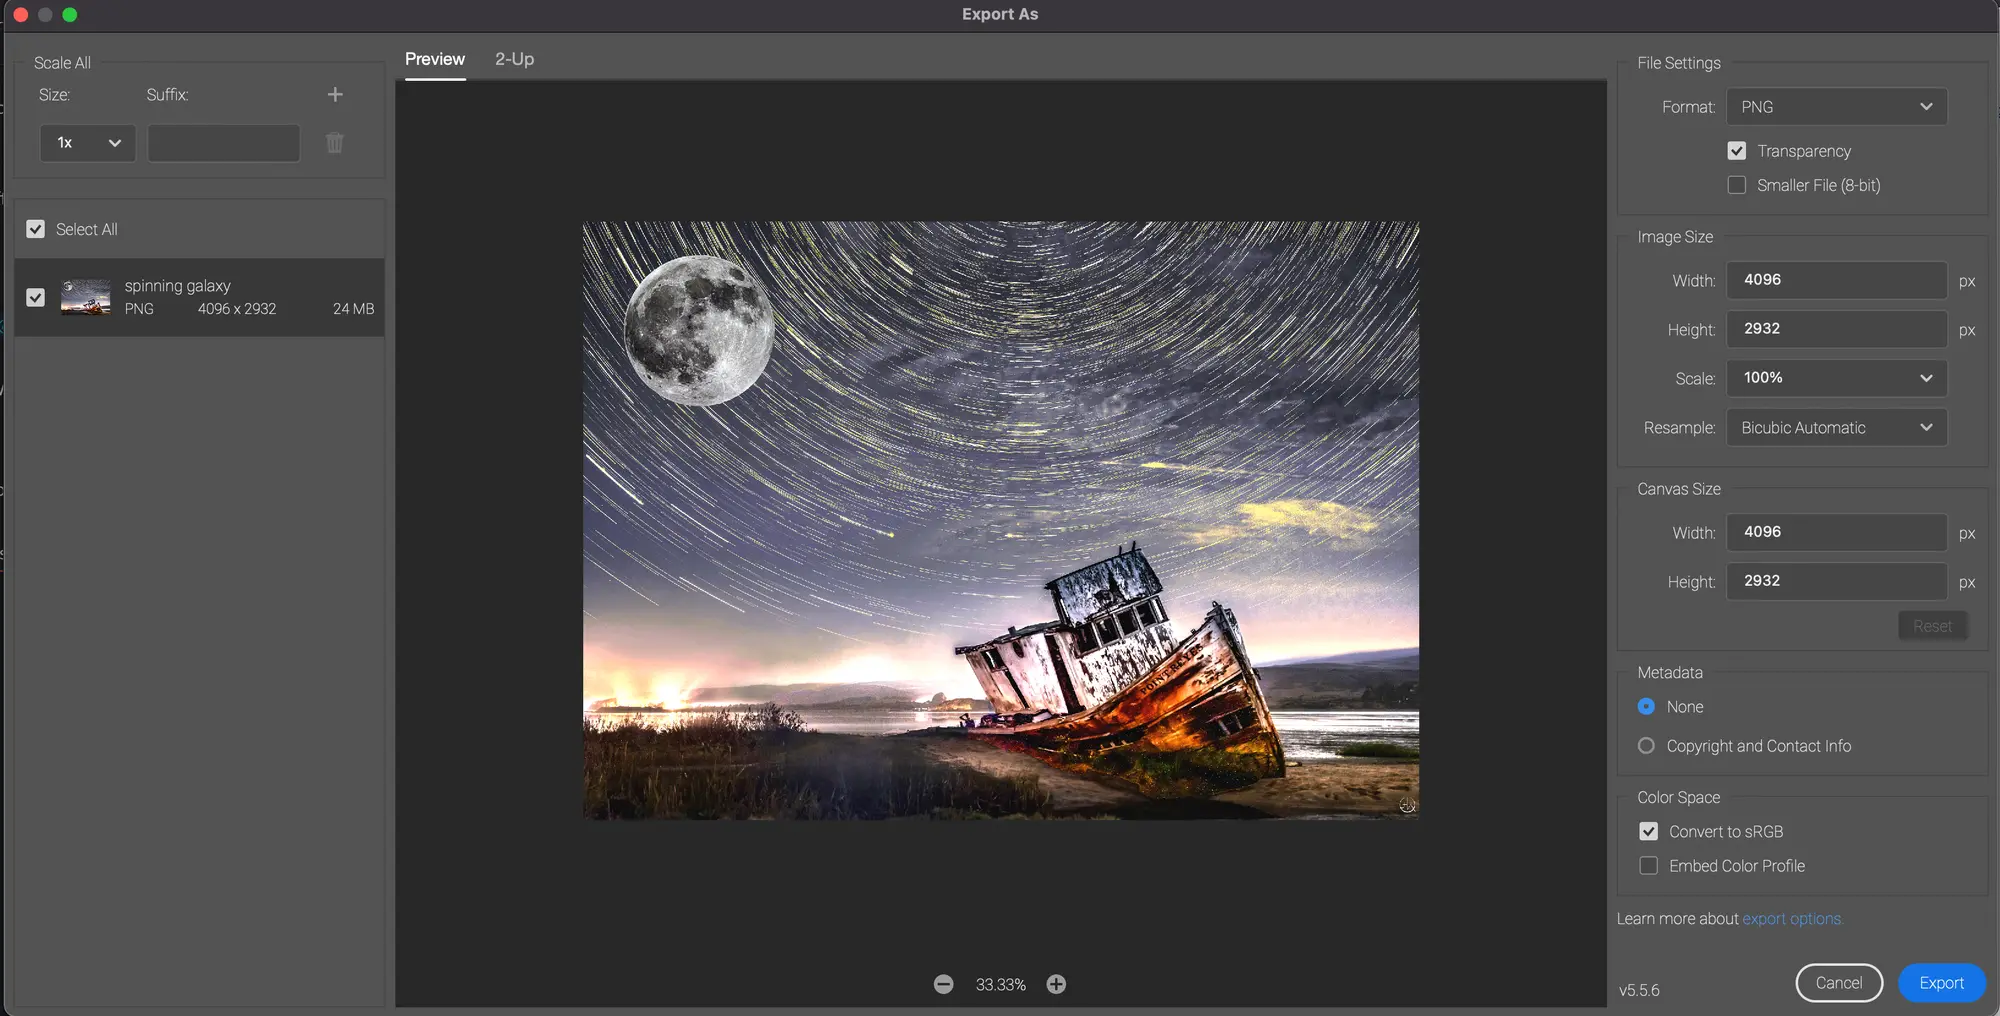 Captura de tela da exportação aprimorada do Photoshop como recurso. 